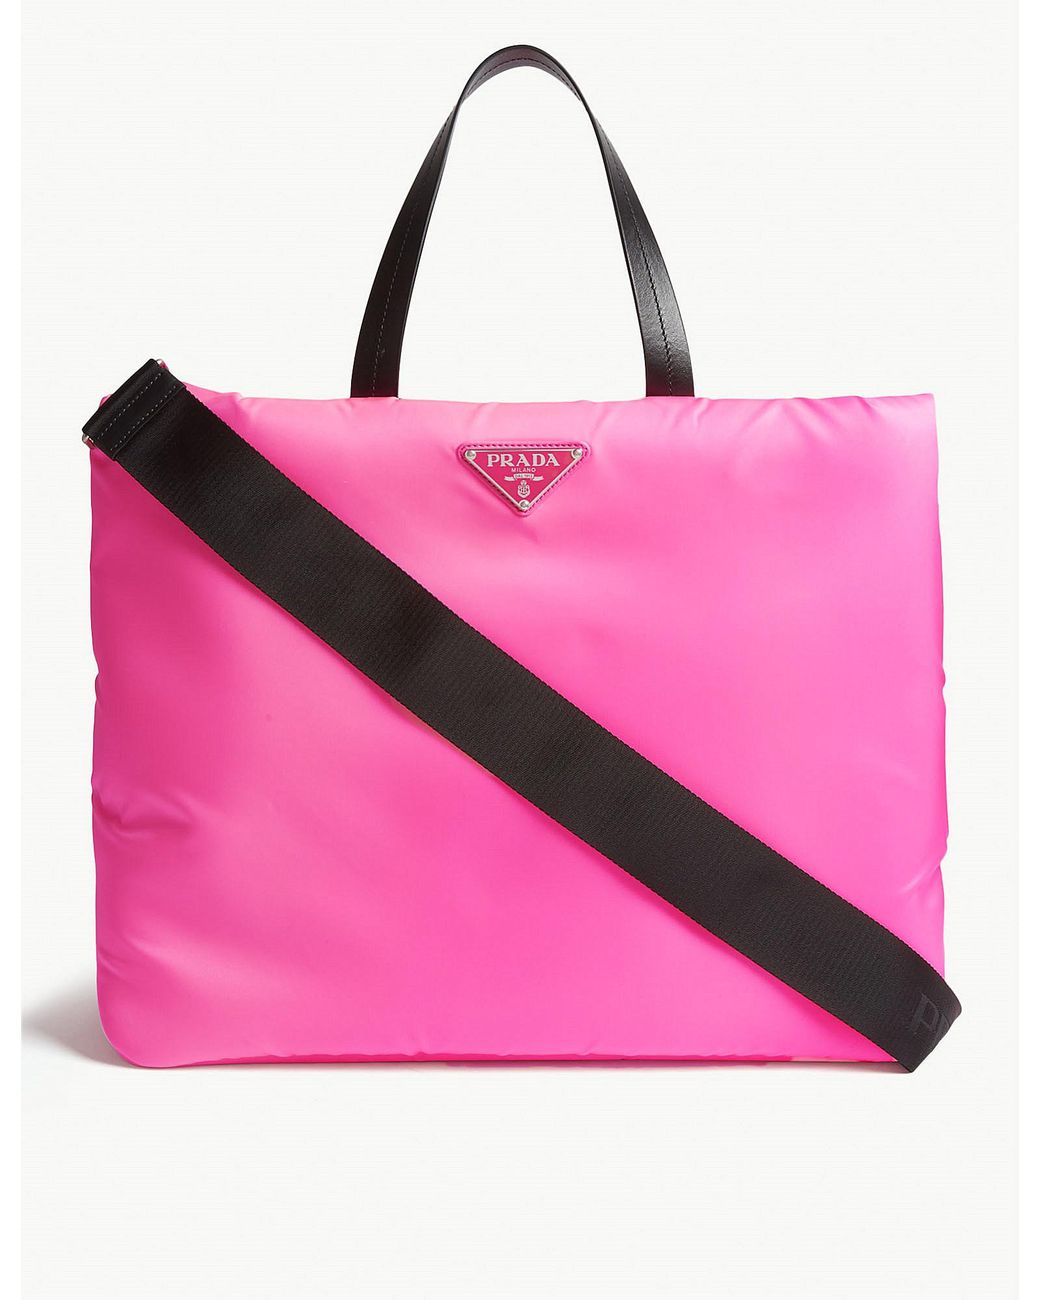 Prada Puffer Nylon Tote Bag in Pink